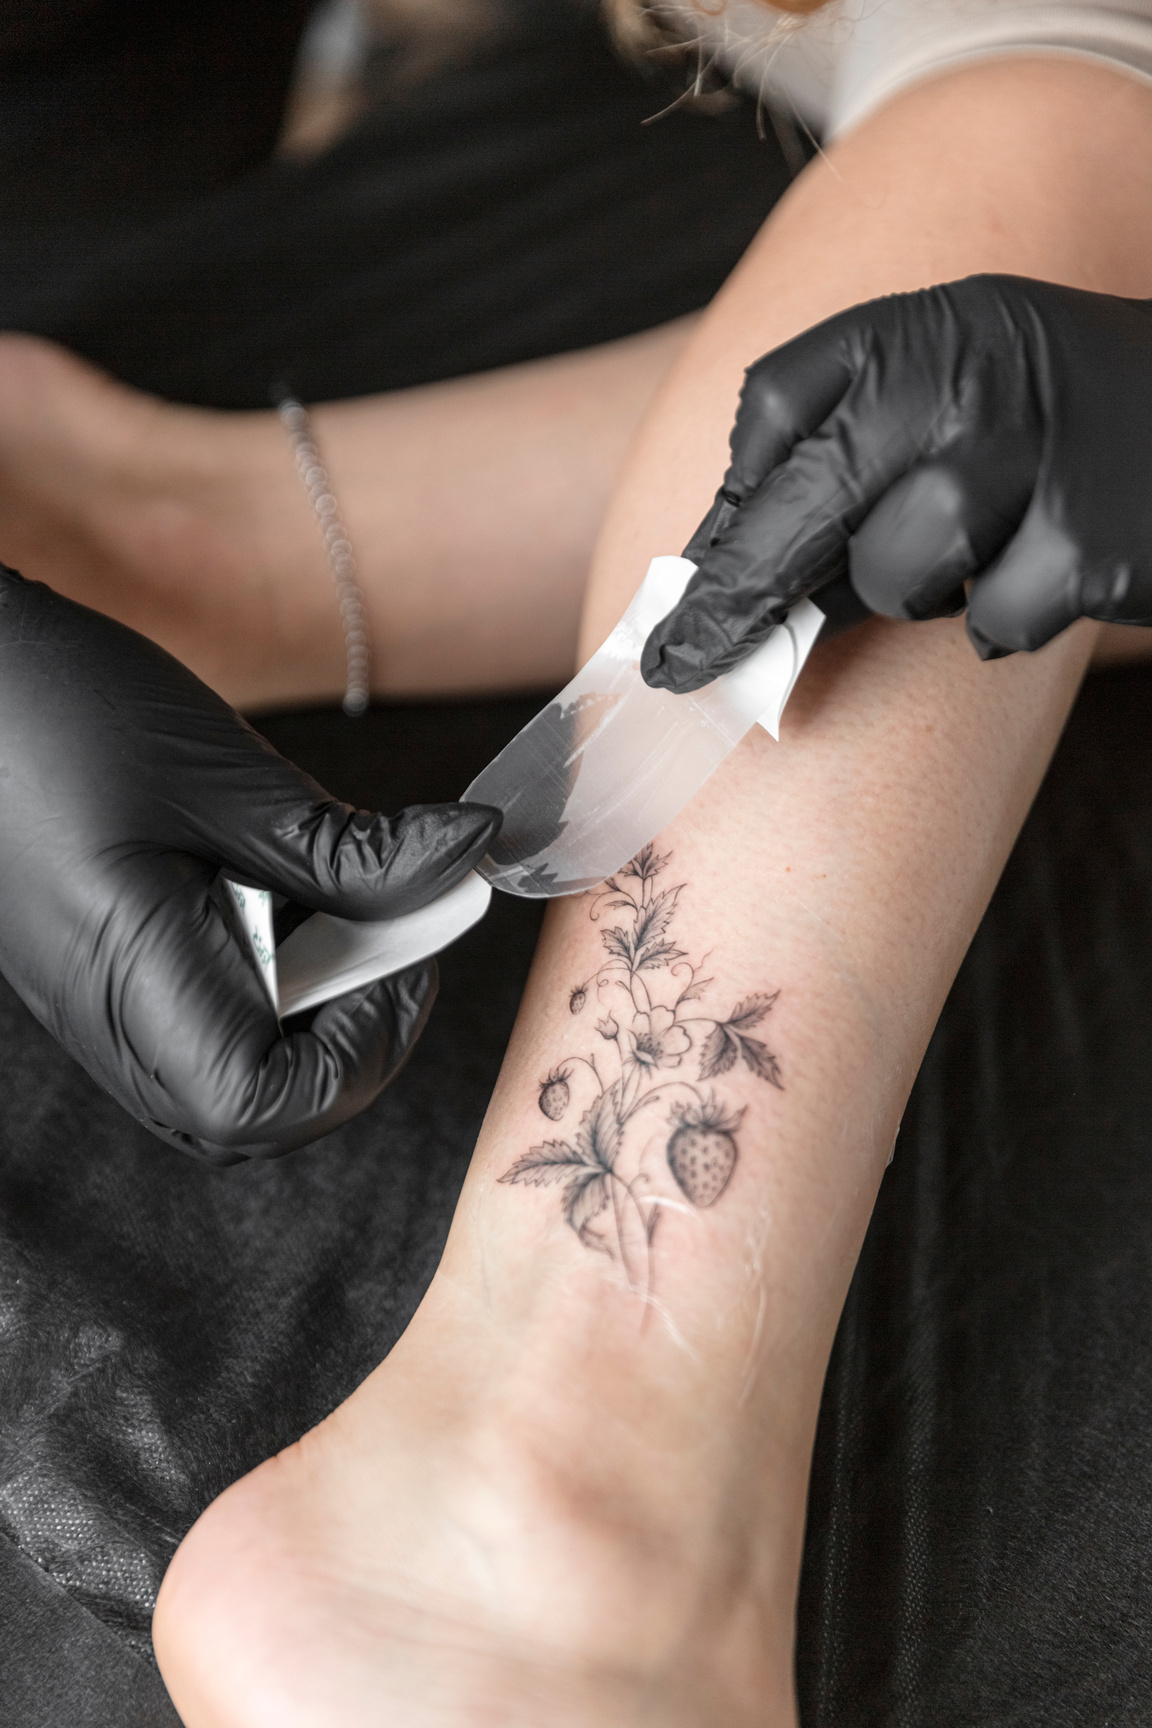 Professional tattoo artist tattooing a woman at tattoo studio